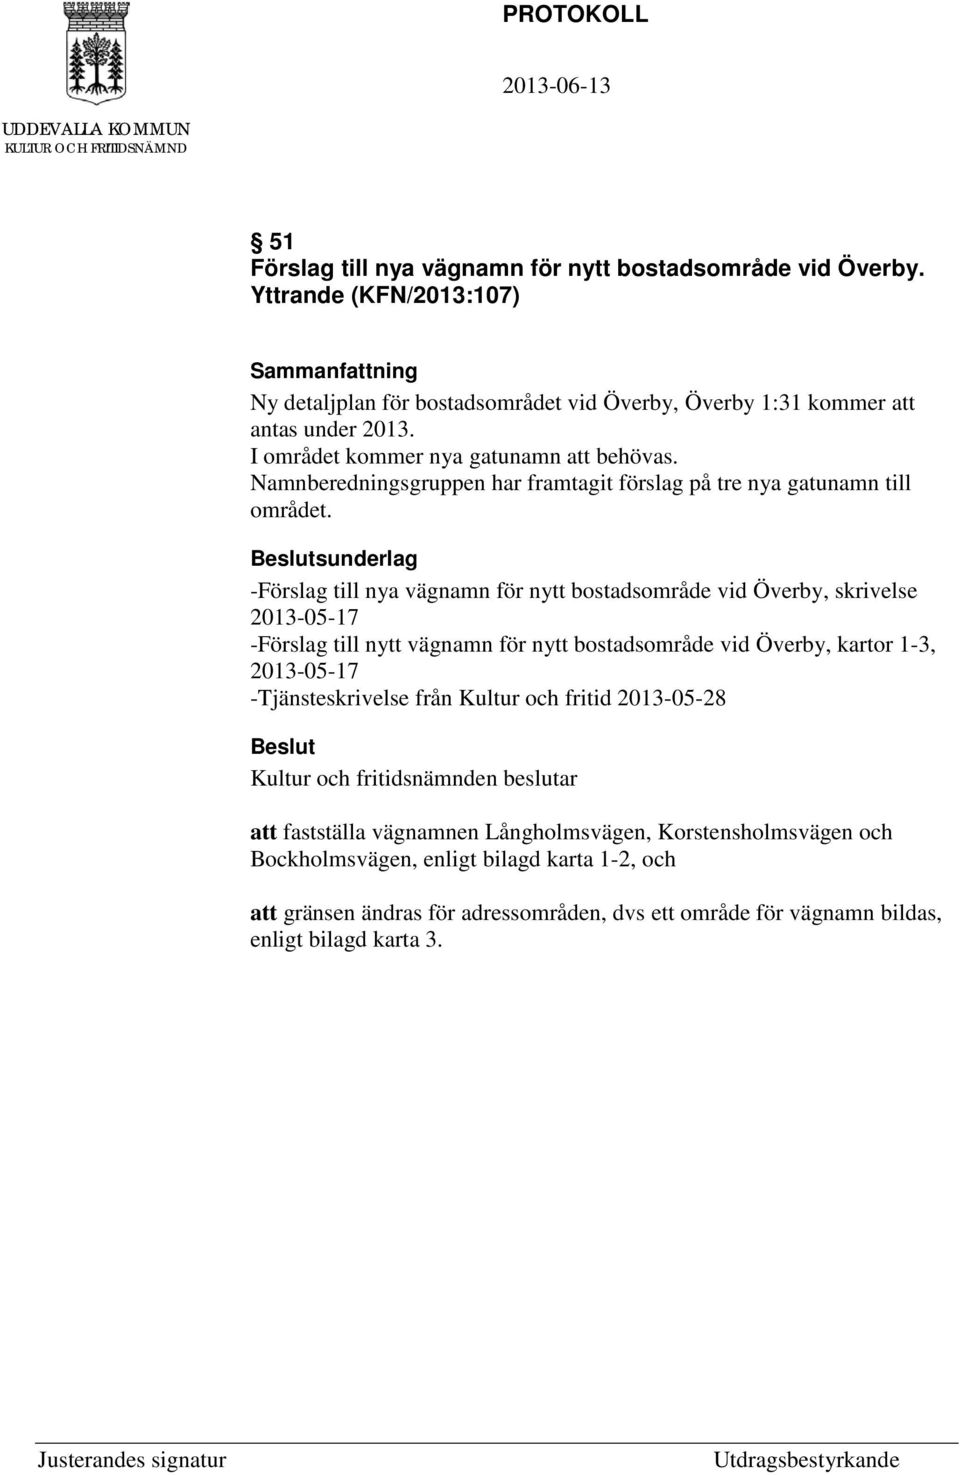 sunderlag -Förslag till nya vägnamn för nytt bostadsområde vid Överby, skrivelse 2013-05-17 -Förslag till nytt vägnamn för nytt bostadsområde vid Överby, kartor 1-3, 2013-05-17